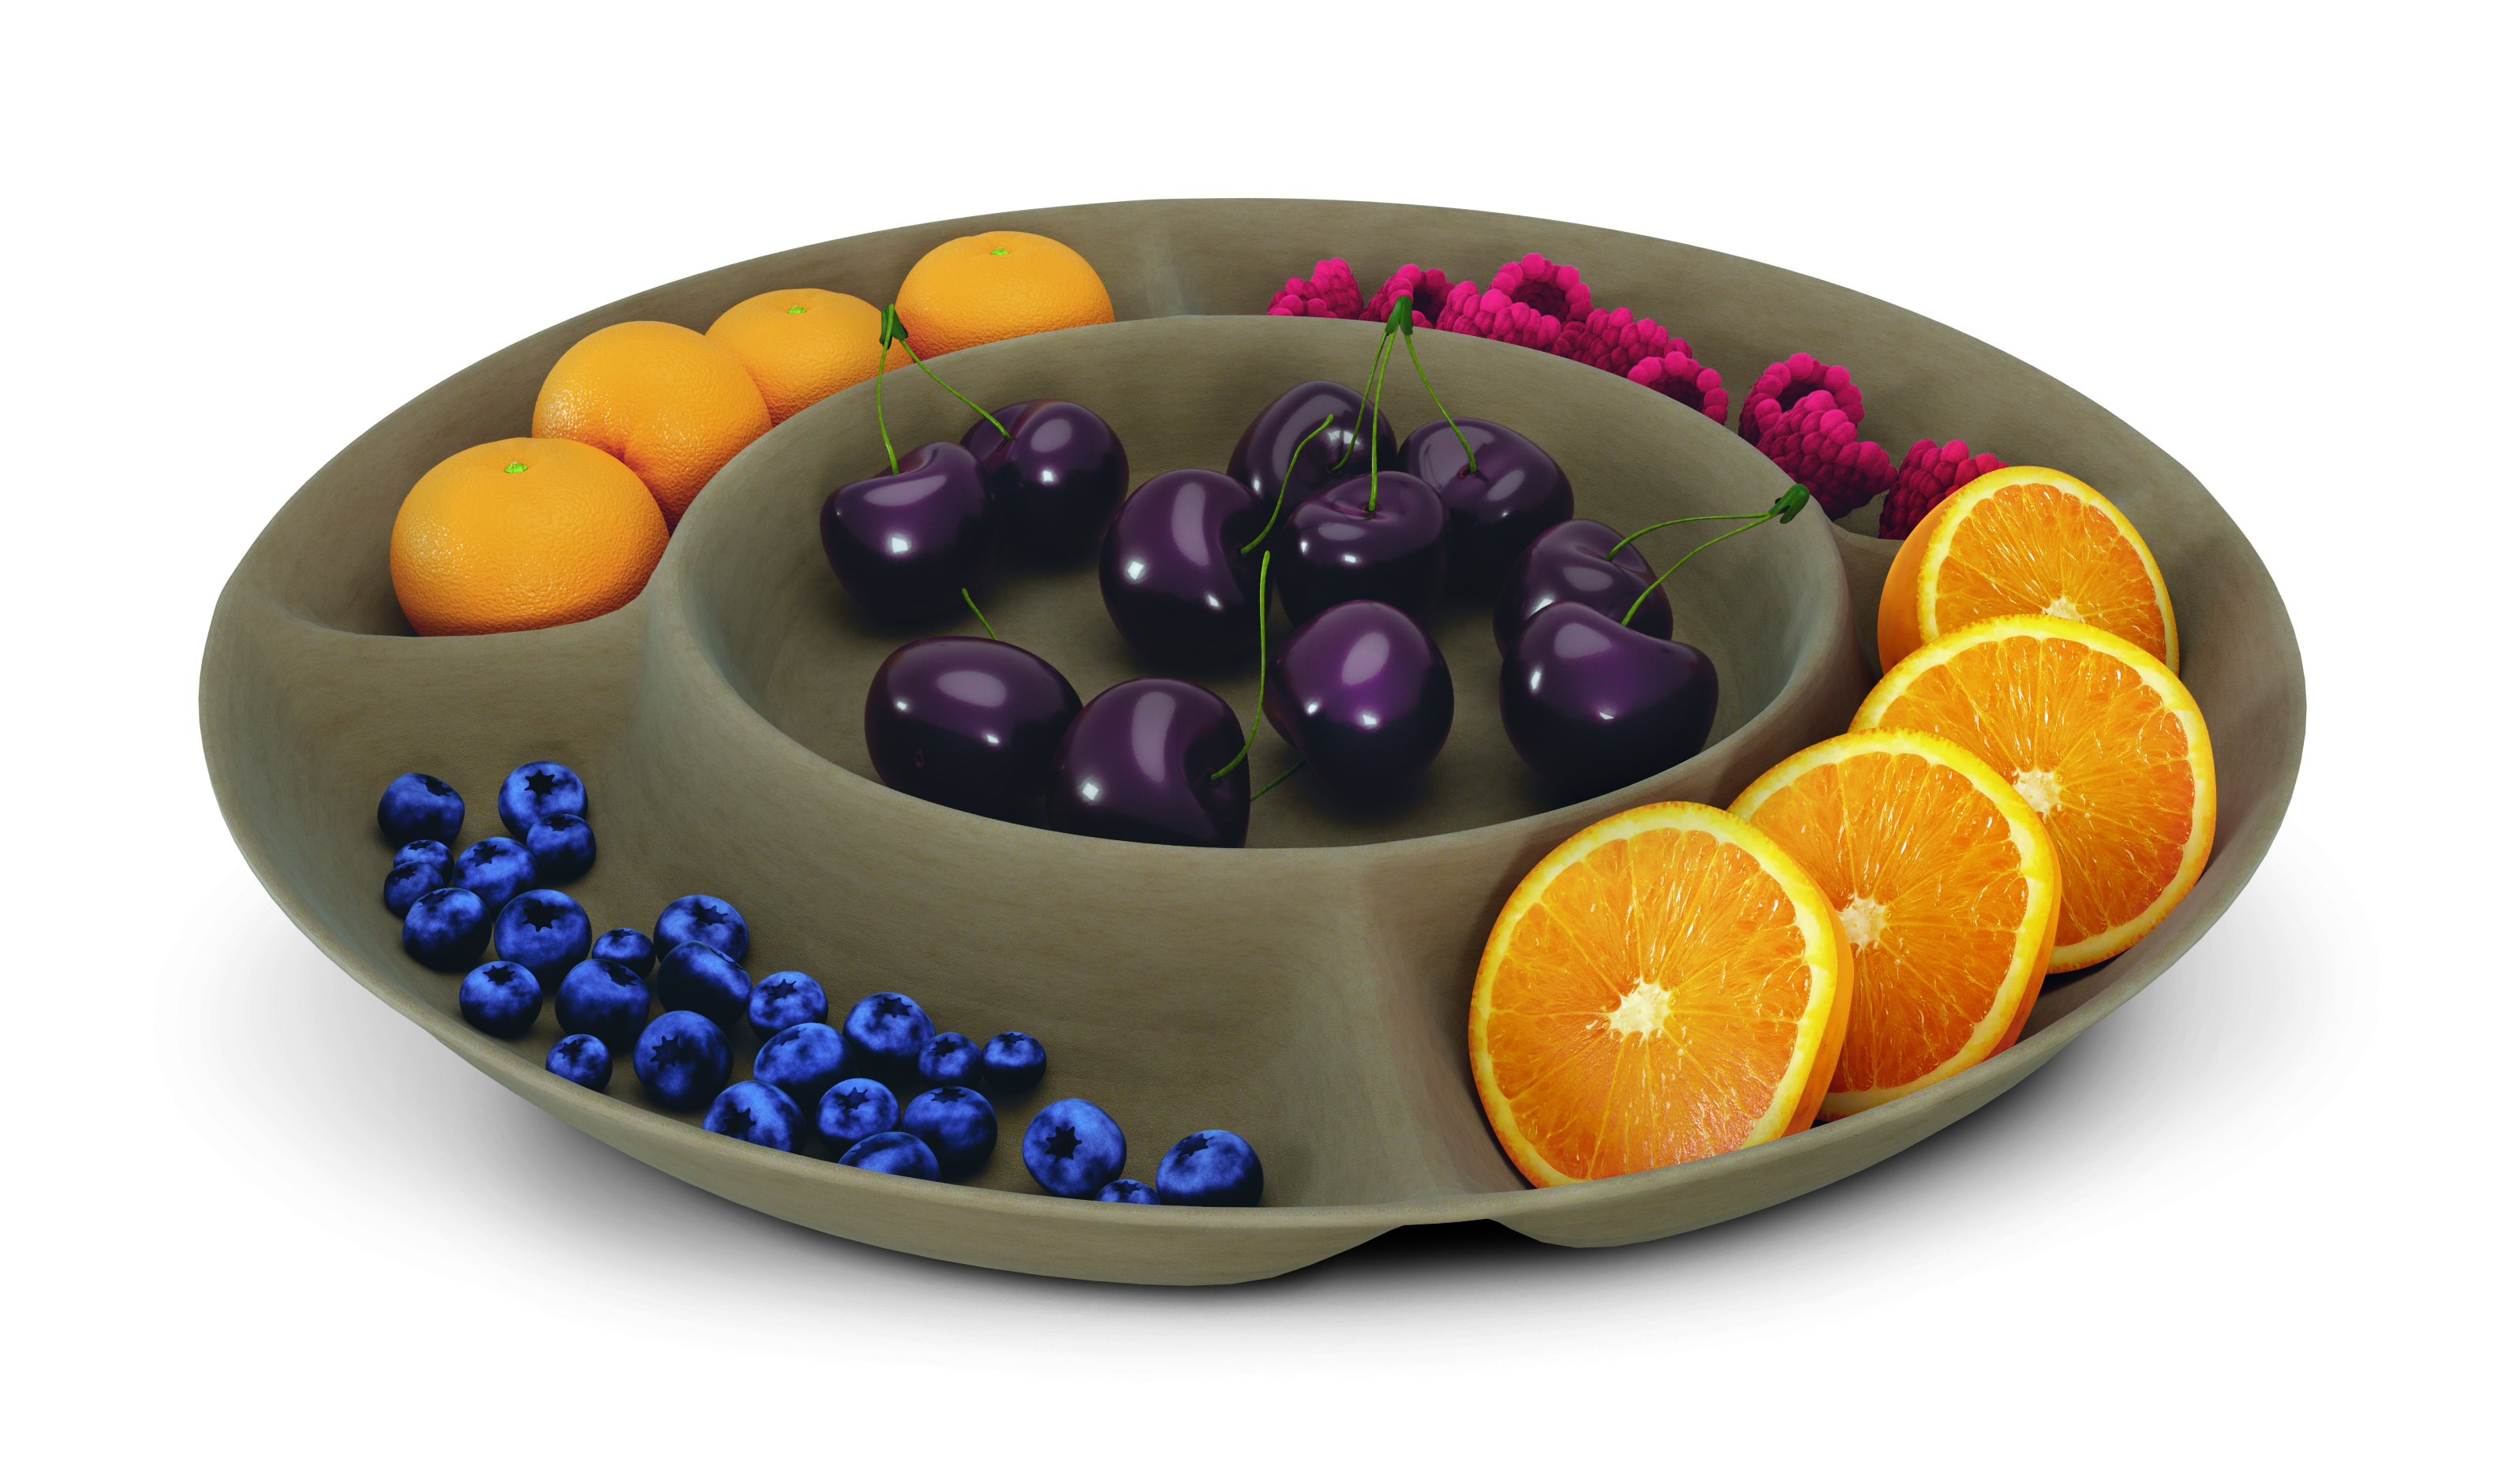 Computermodell einer braunen Papierschale mit mehreren Fächern, in denen jeweils eine Obstsorte – Mandarinen, Himbeeren, Orangenschnitze, Heidelbeeren außen und in der Mitte Kirschen – liegt.